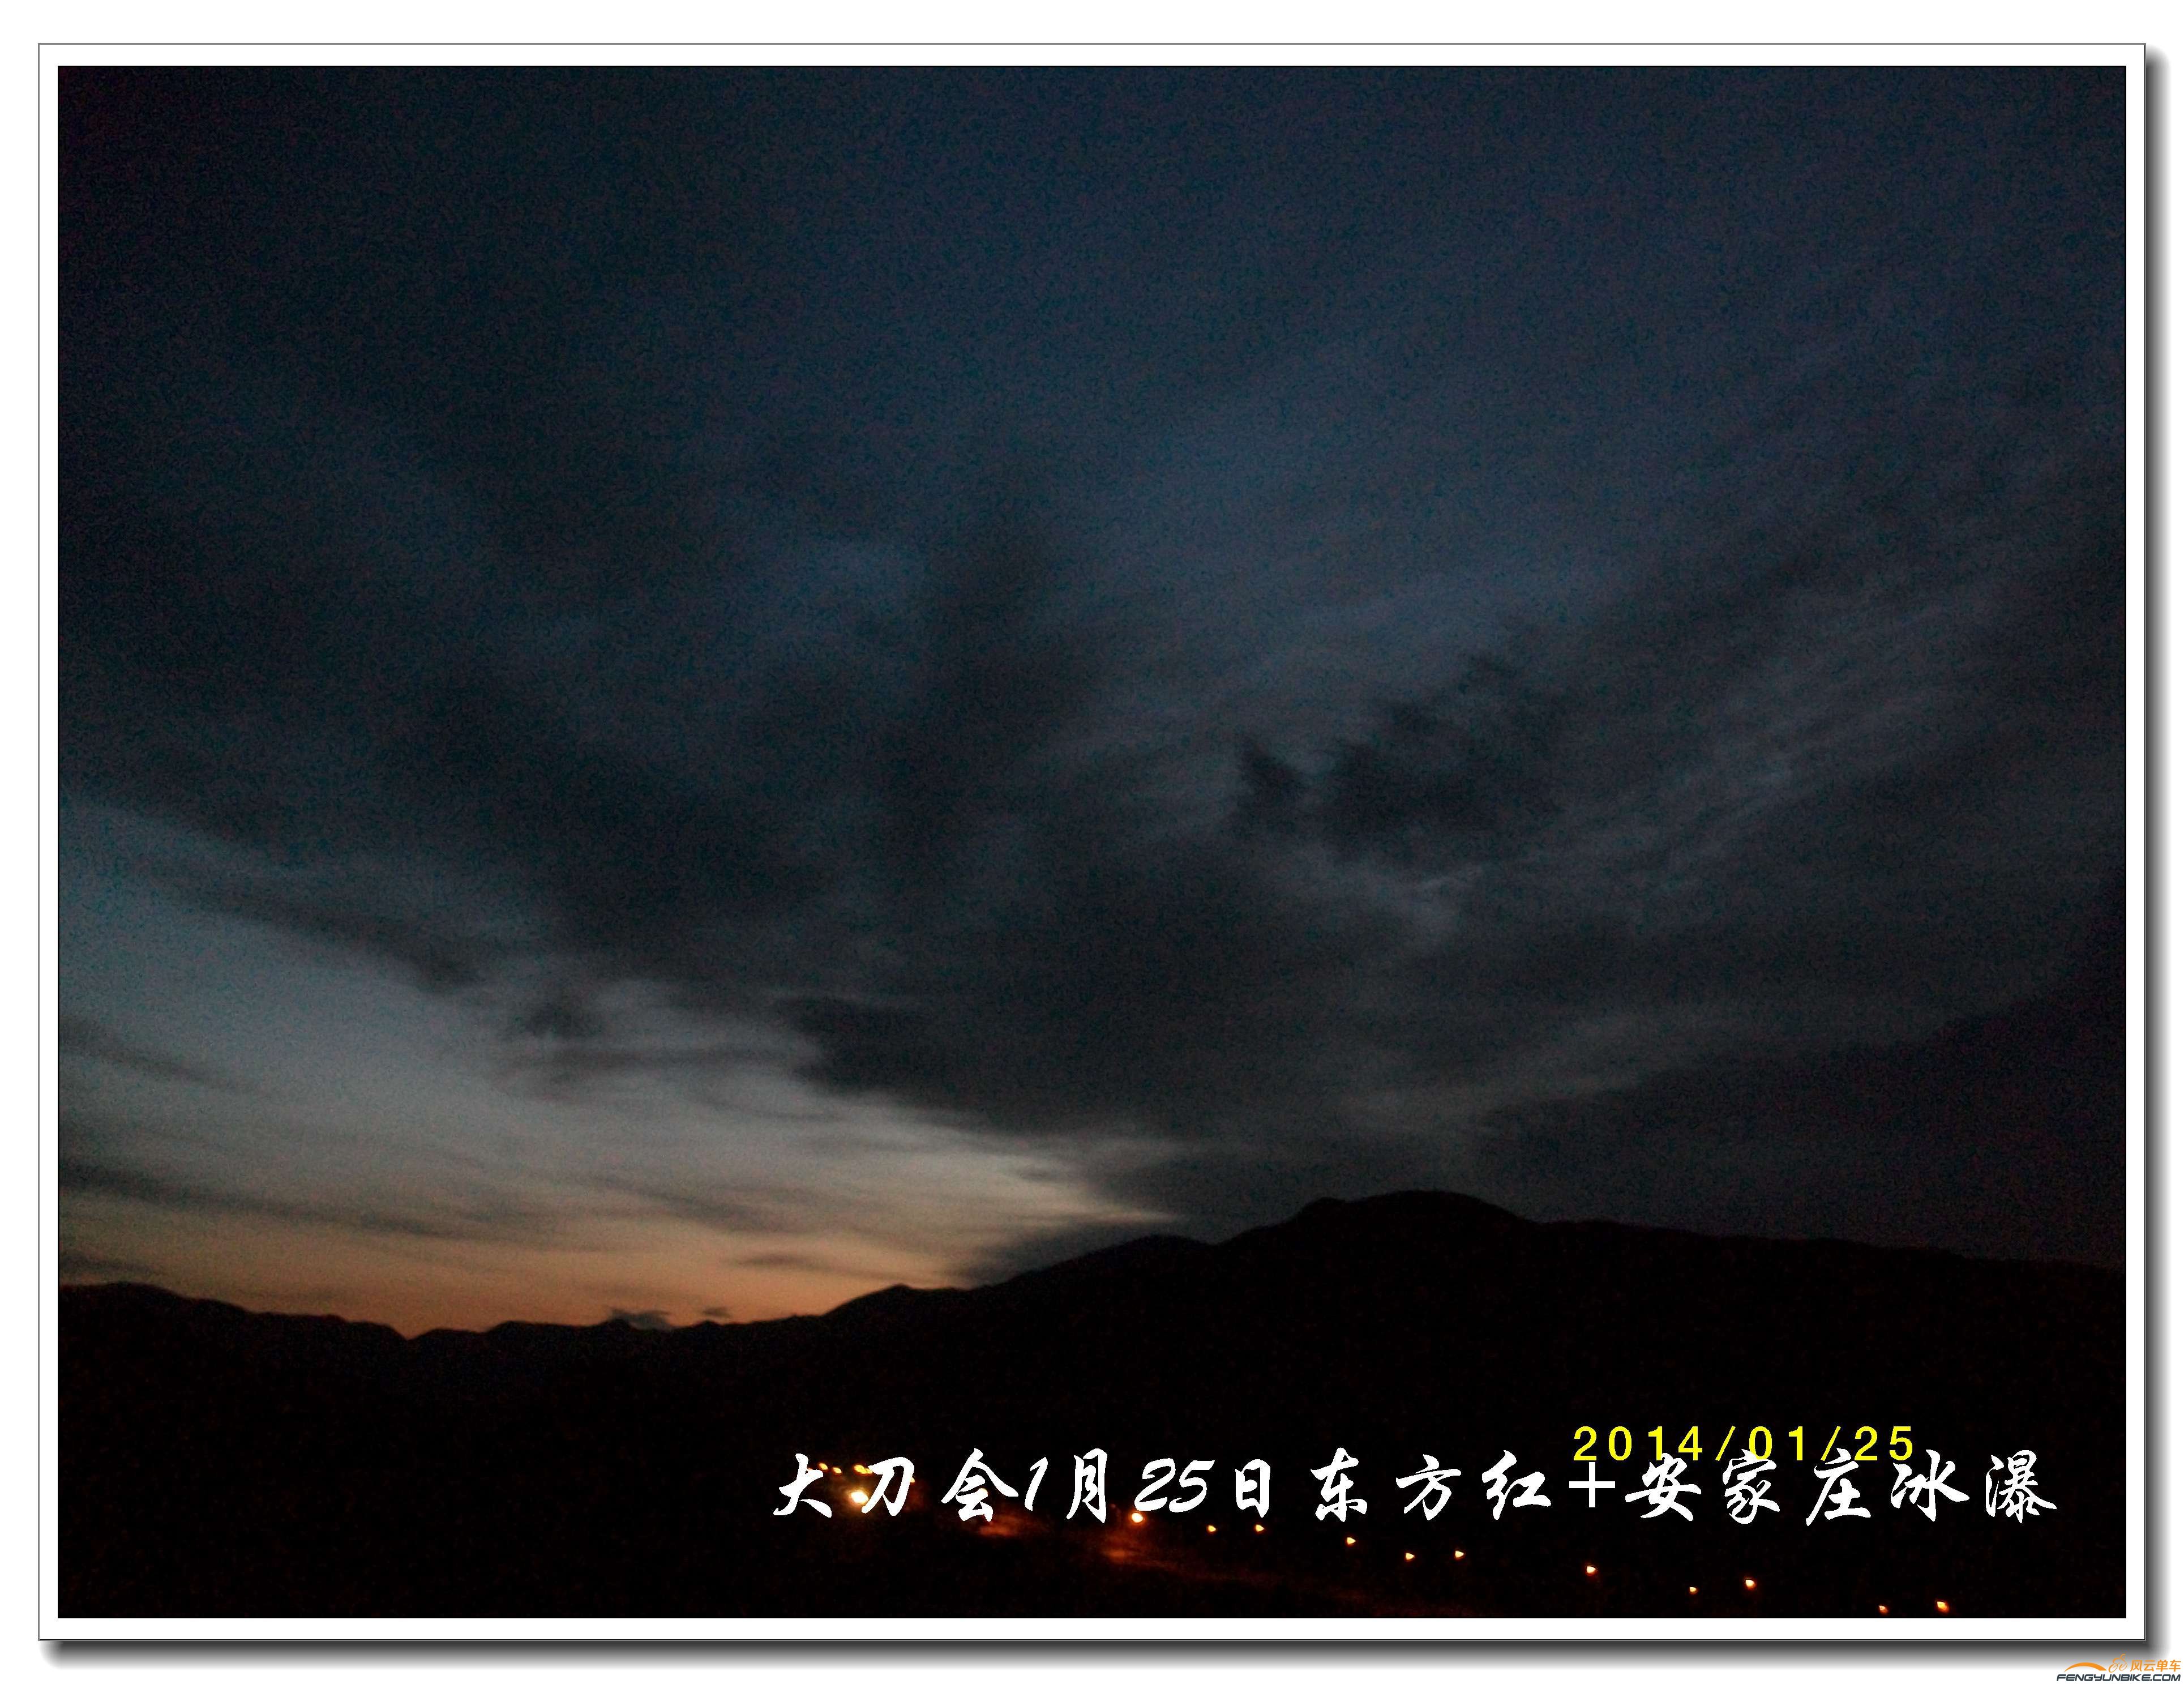 20140125东方红 安家庄冰瀑04.jpg